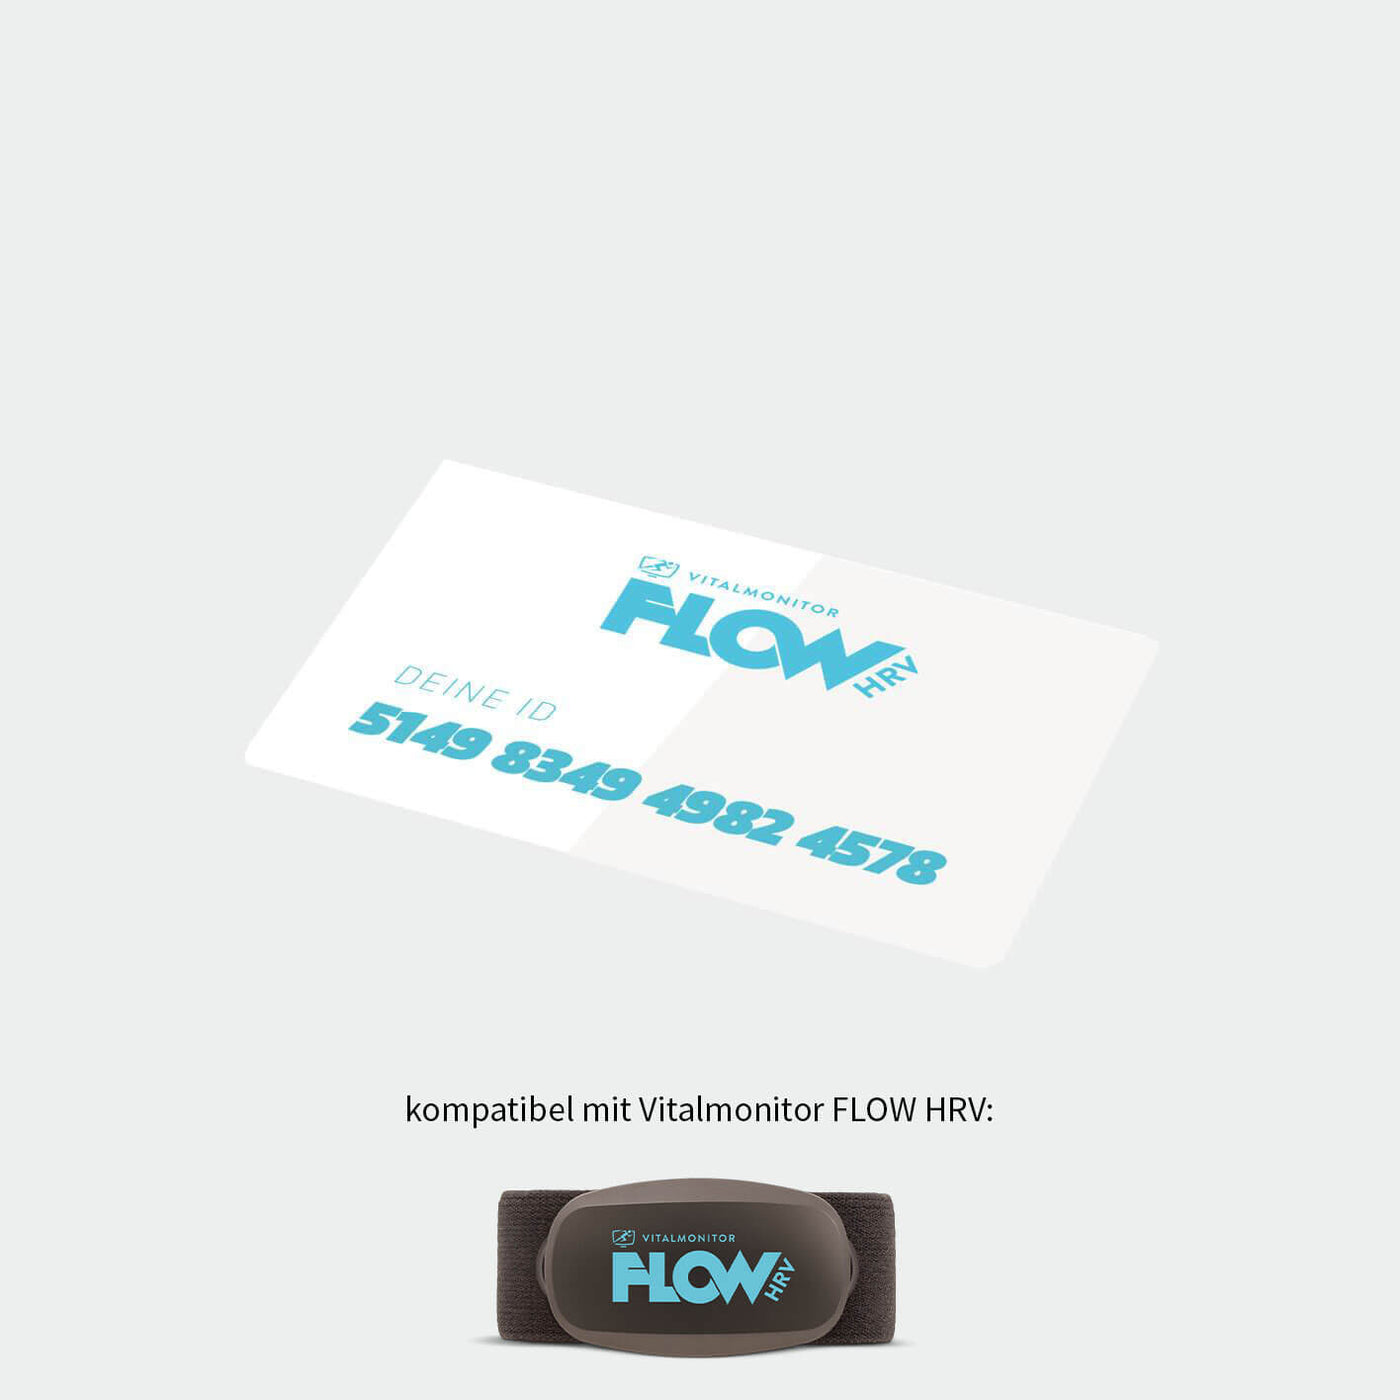 FLOW HRV Partner ID